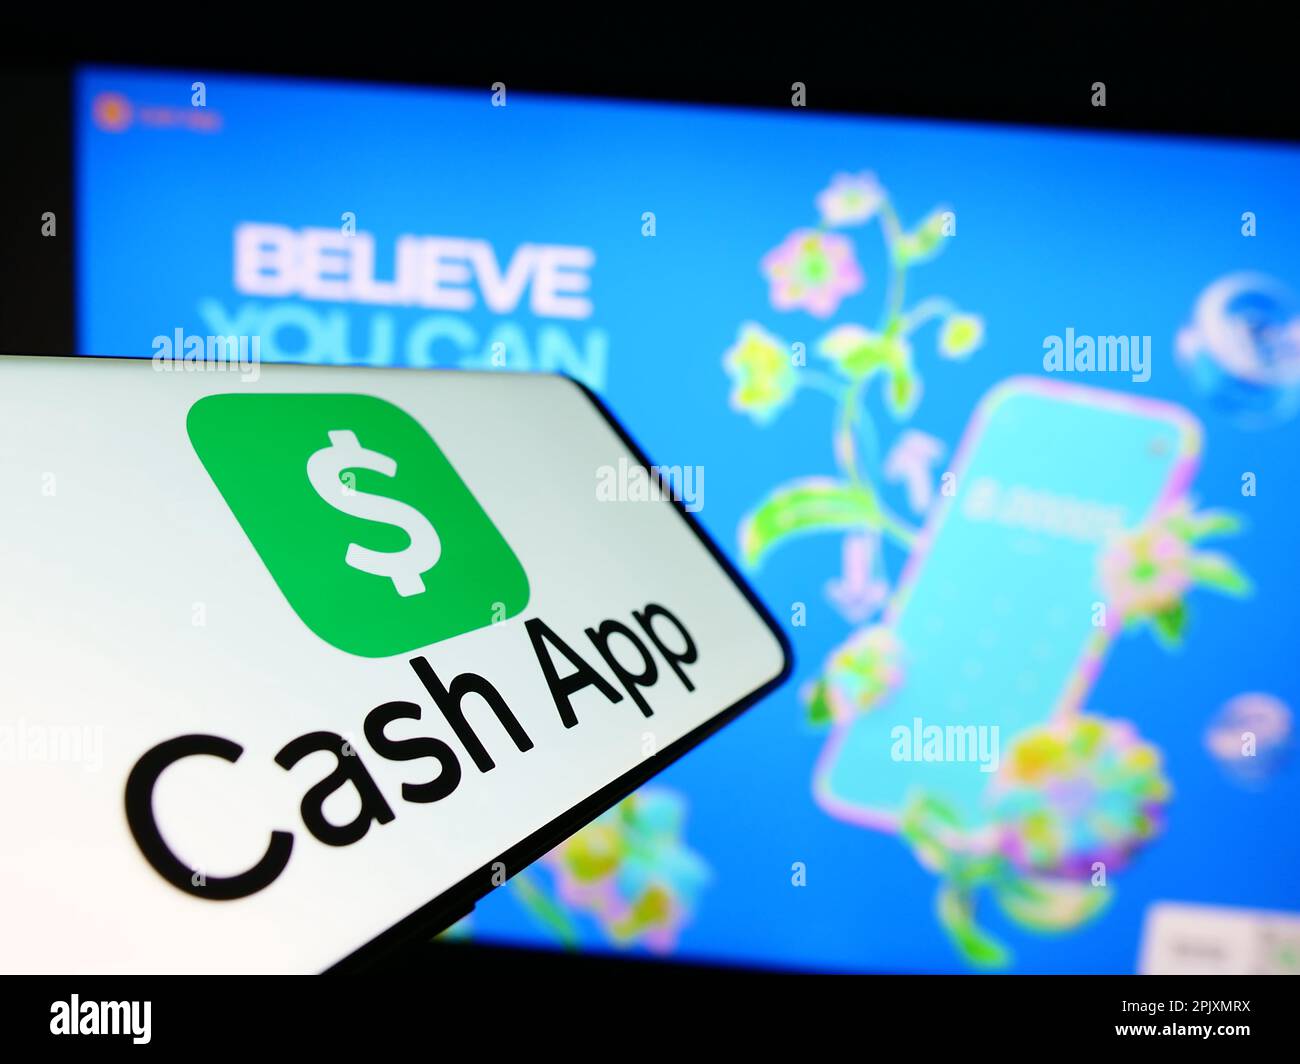 Cellulare con logo della società americana fintech Cash App Investing LLC sullo schermo di fronte al sito web aziendale. Messa a fuoco al centro del display del telefono. Foto Stock